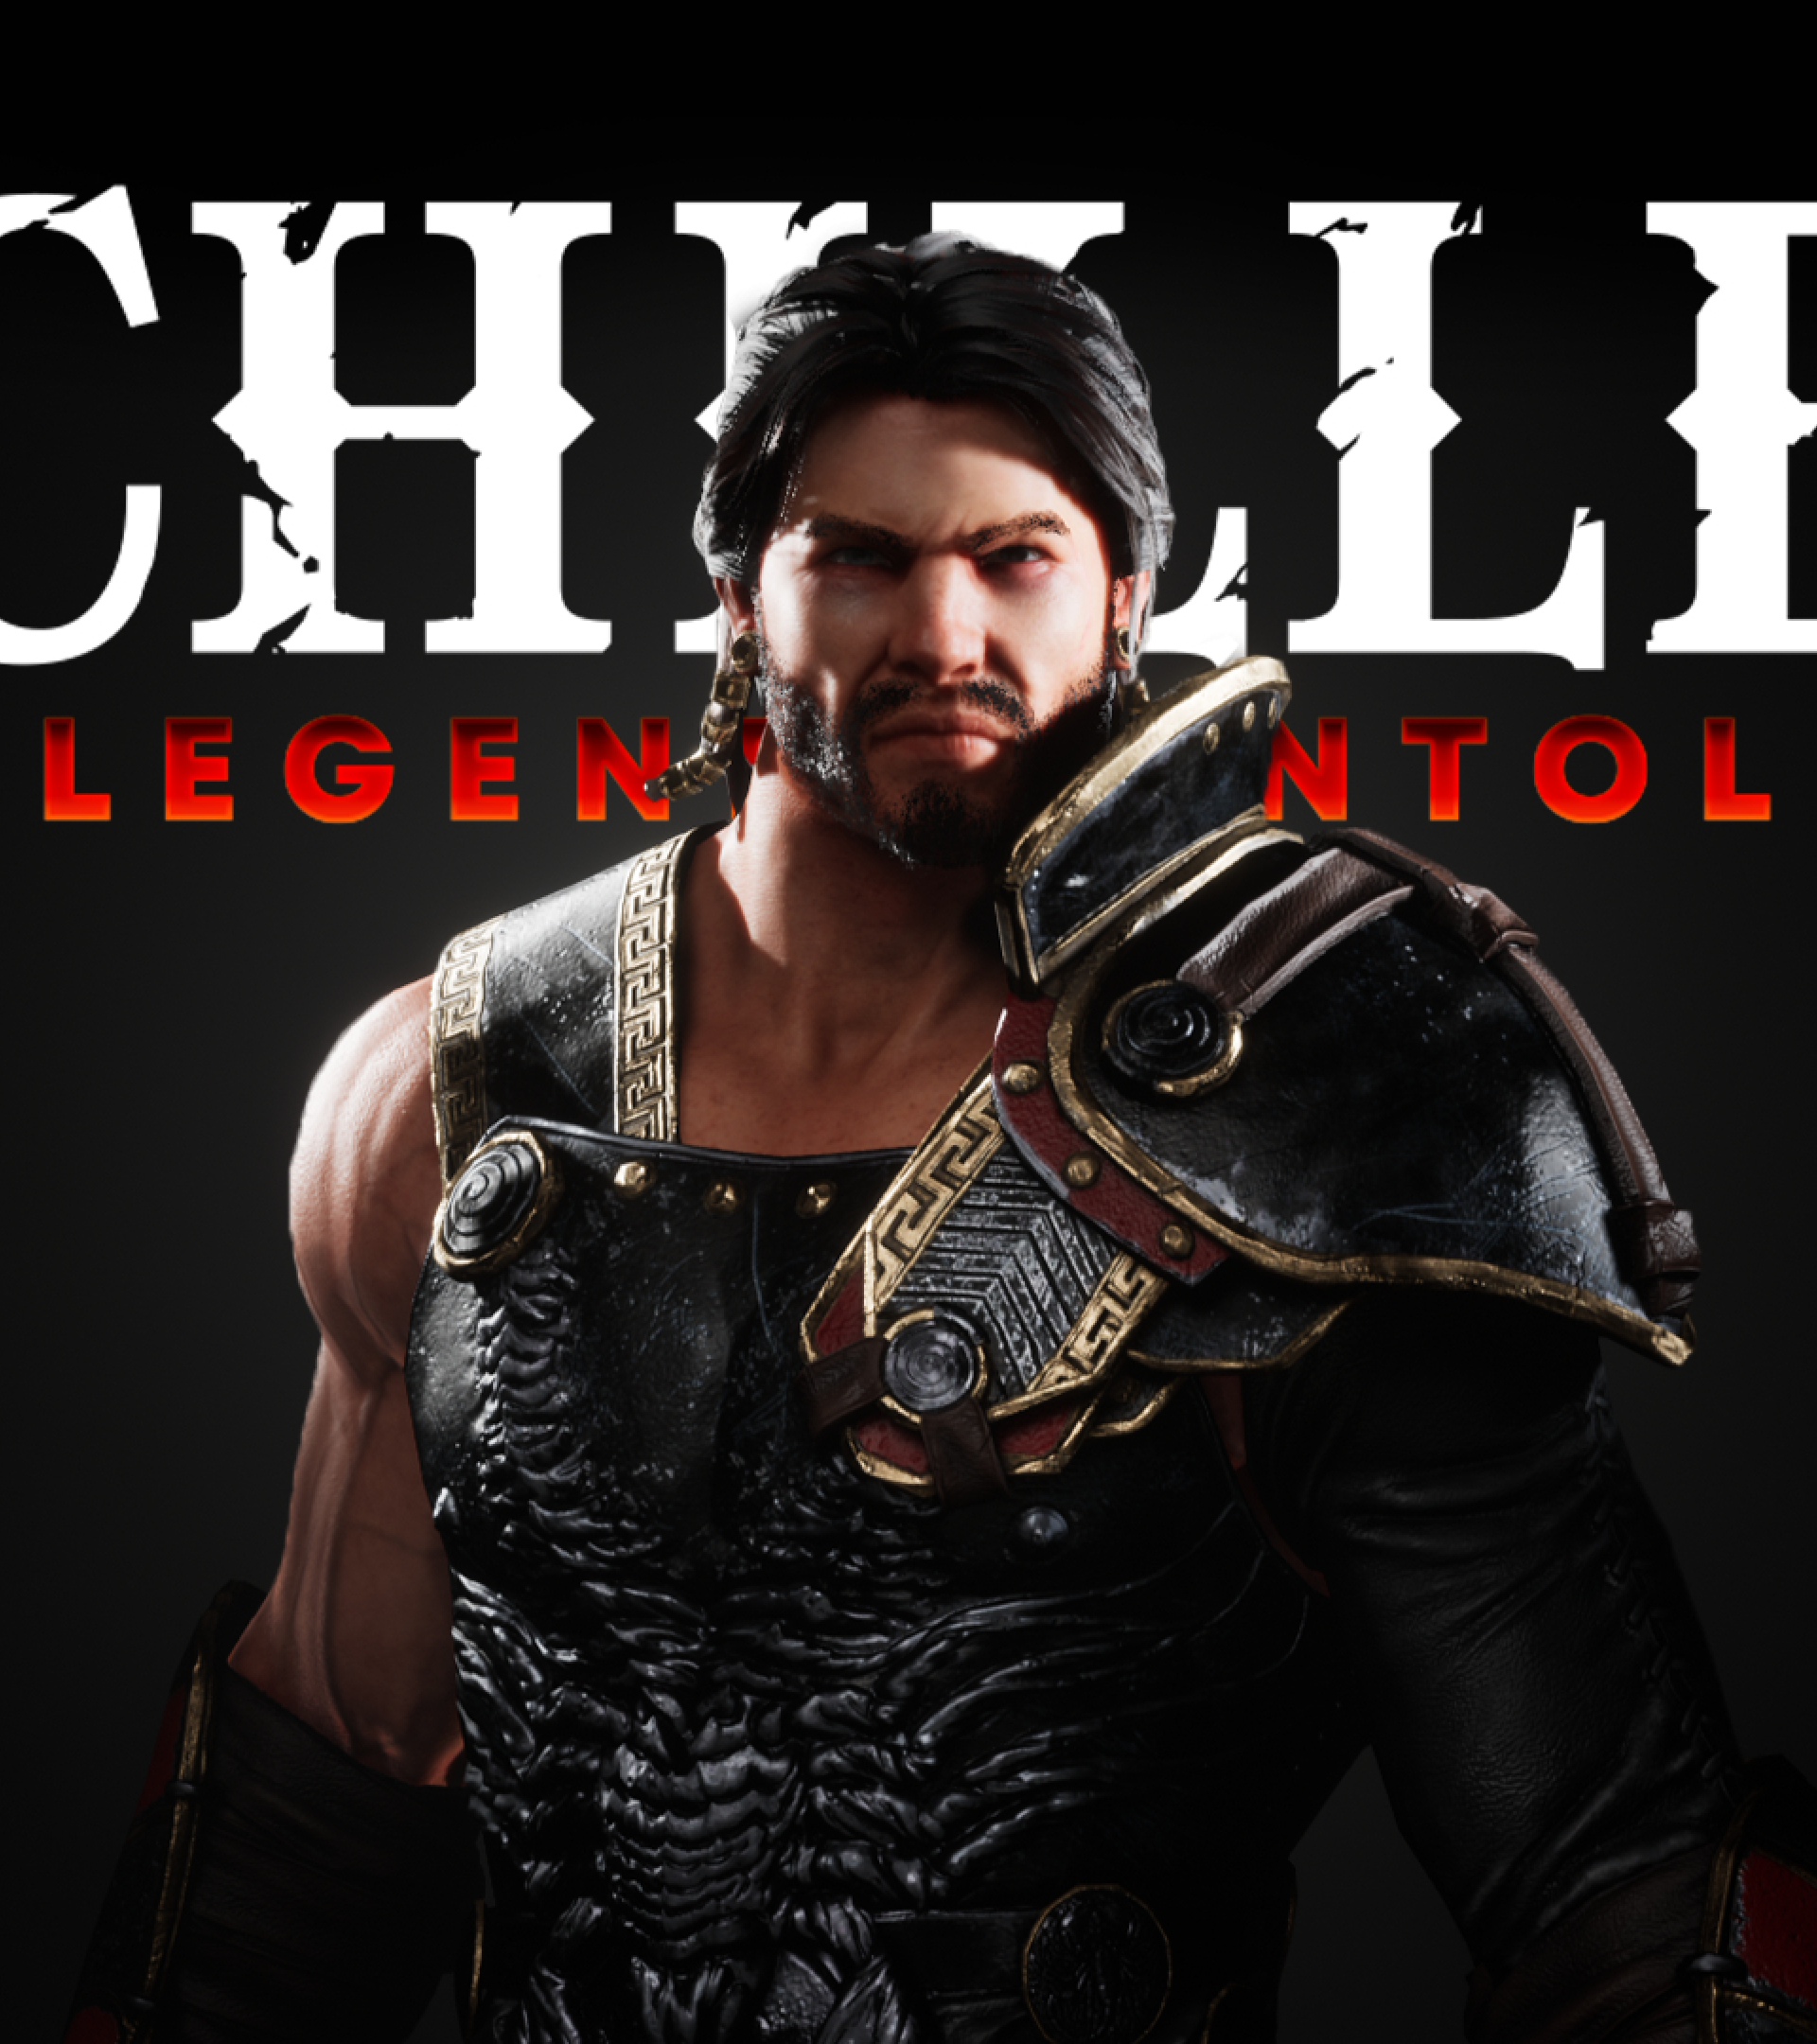 Achilles Legends Untold free downloads